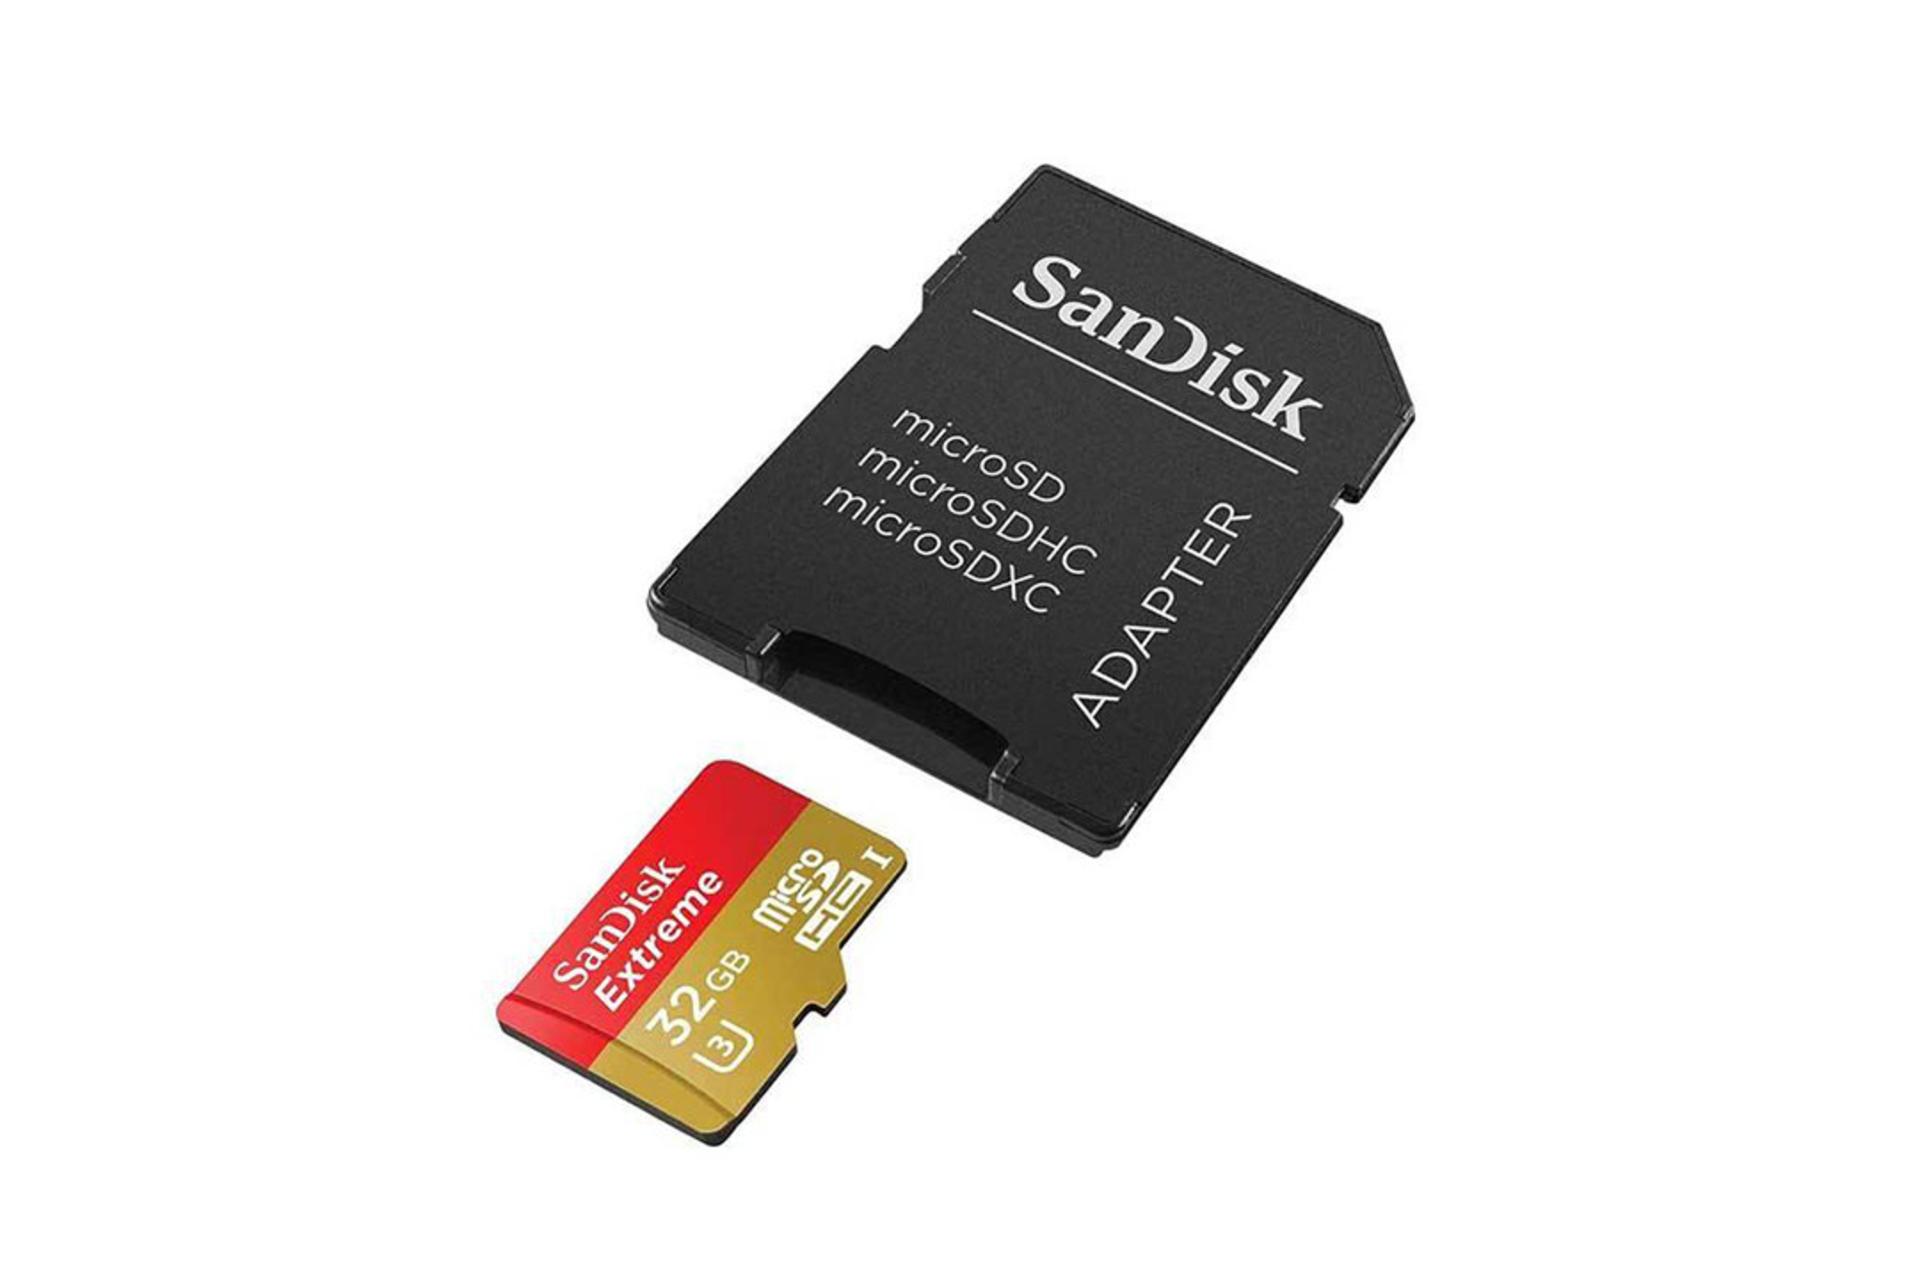 SanDisk Extreme V30 SDHC Class 10 UHS-I U3 32GB